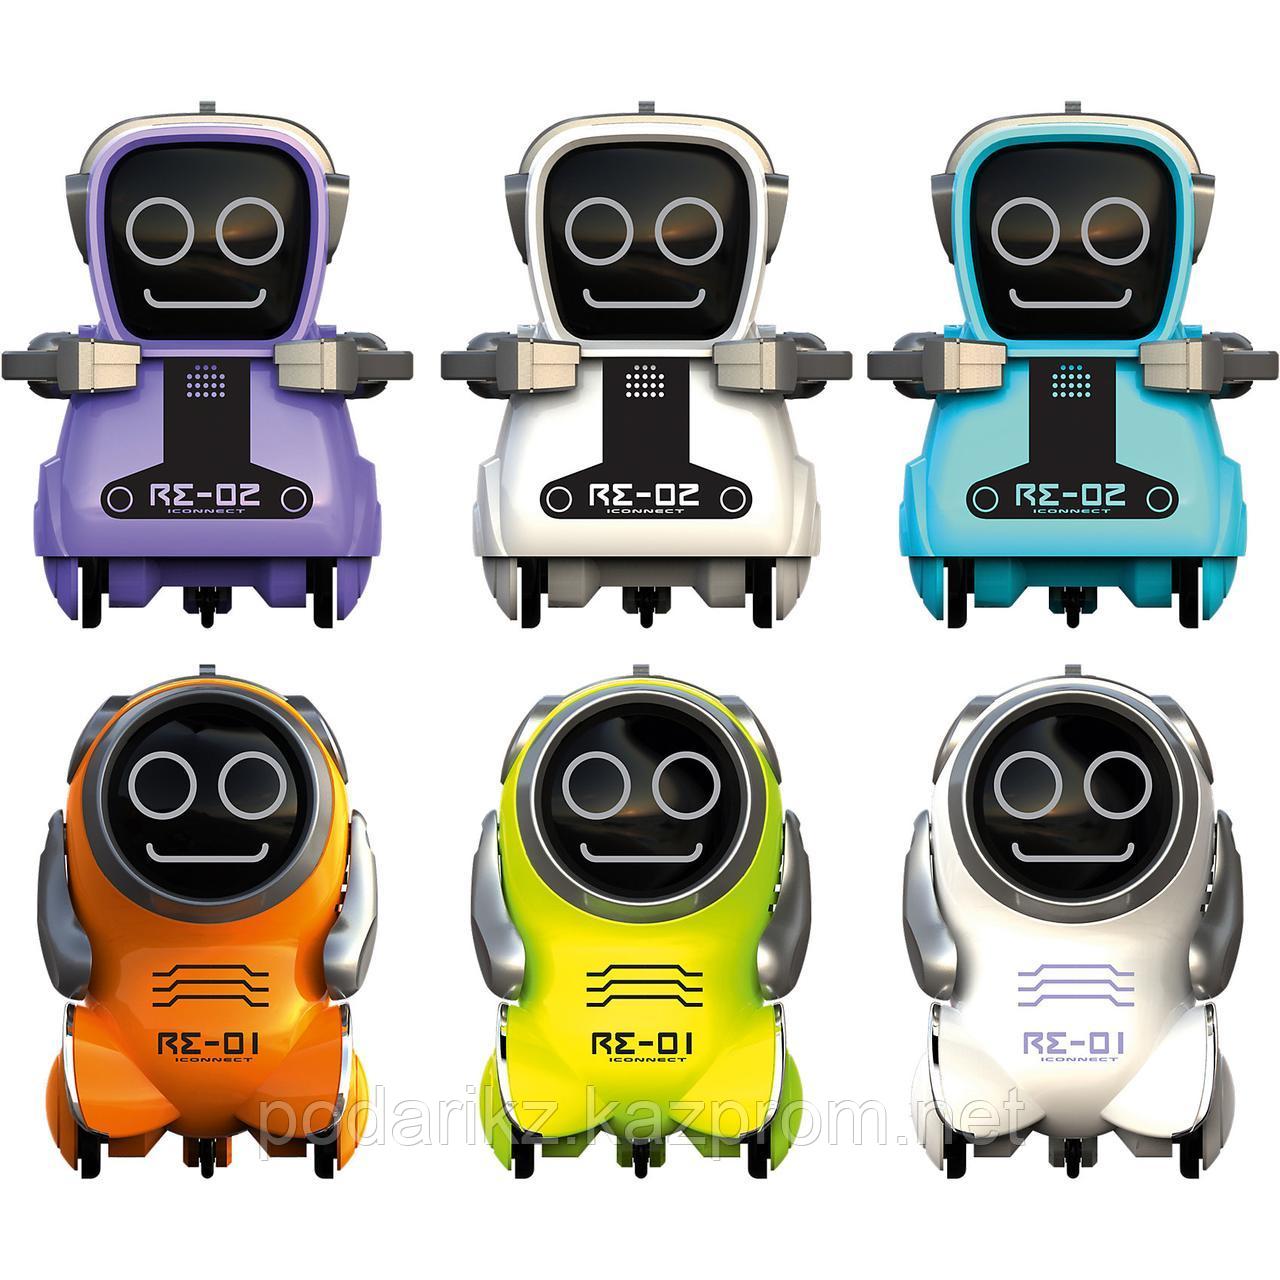 Silverlit Робот Покибот (Pokibot)